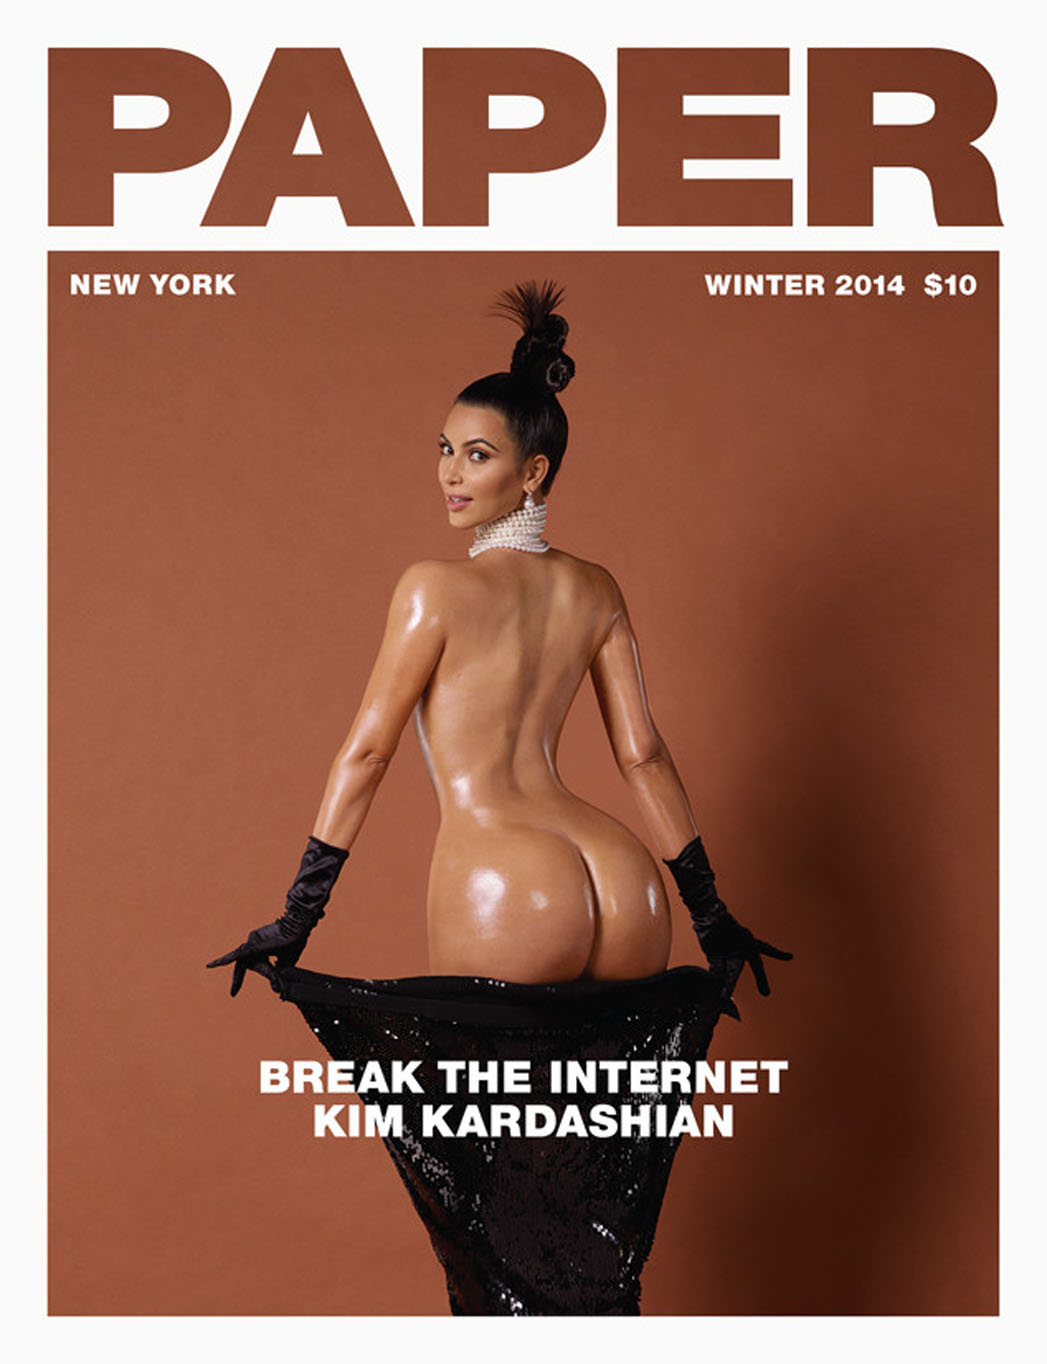 cori mihaela recommends Young Kim Kardashian Nude